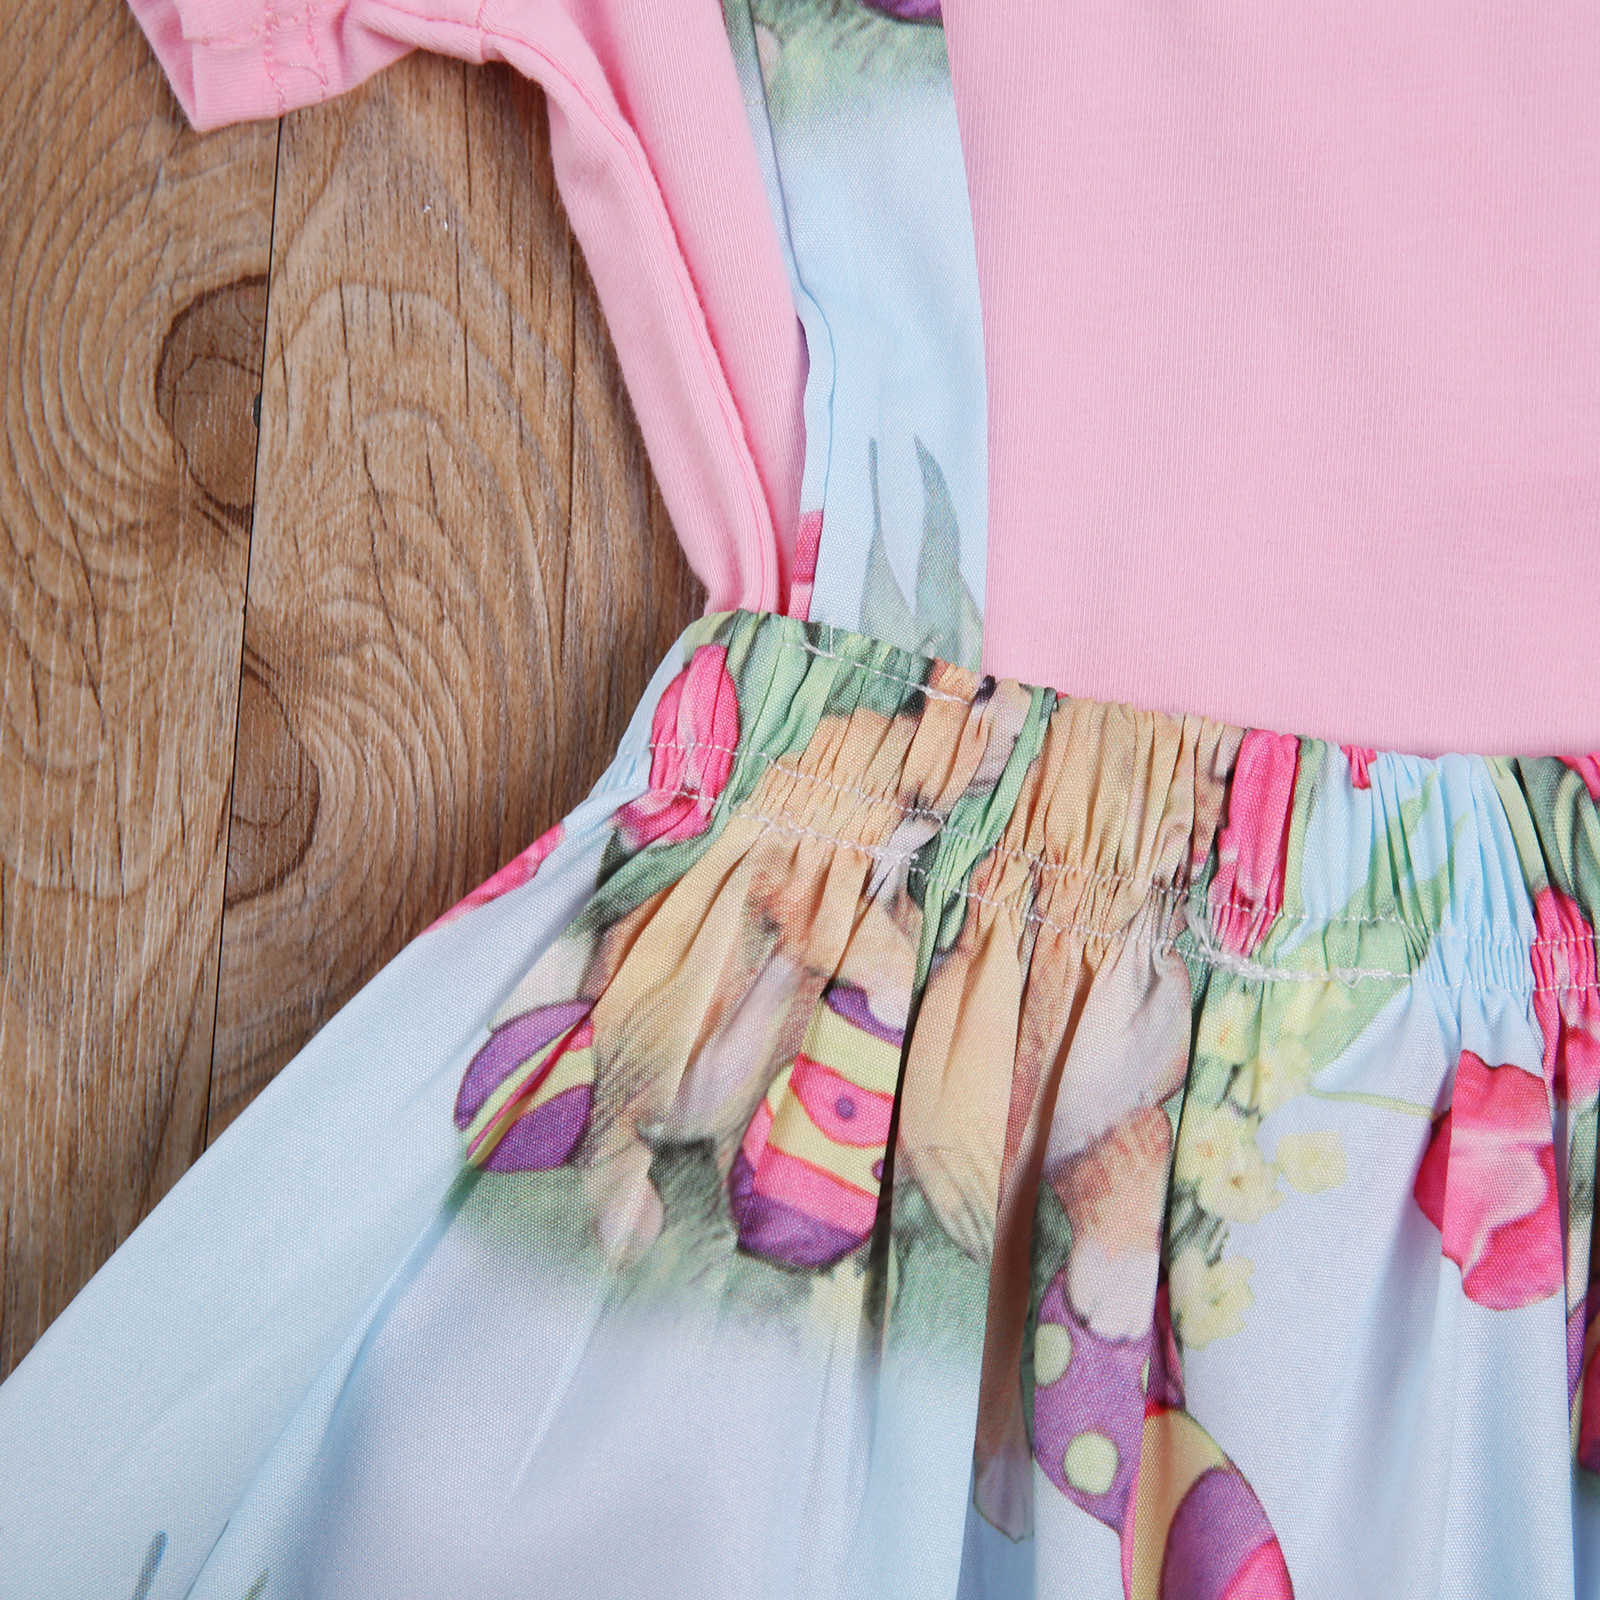 MAベイビー1-4Yイースター幼児の子供の女の子の女の子の服セットピンクカラーTシャツフラワーバニースカートオーバーオン衣装